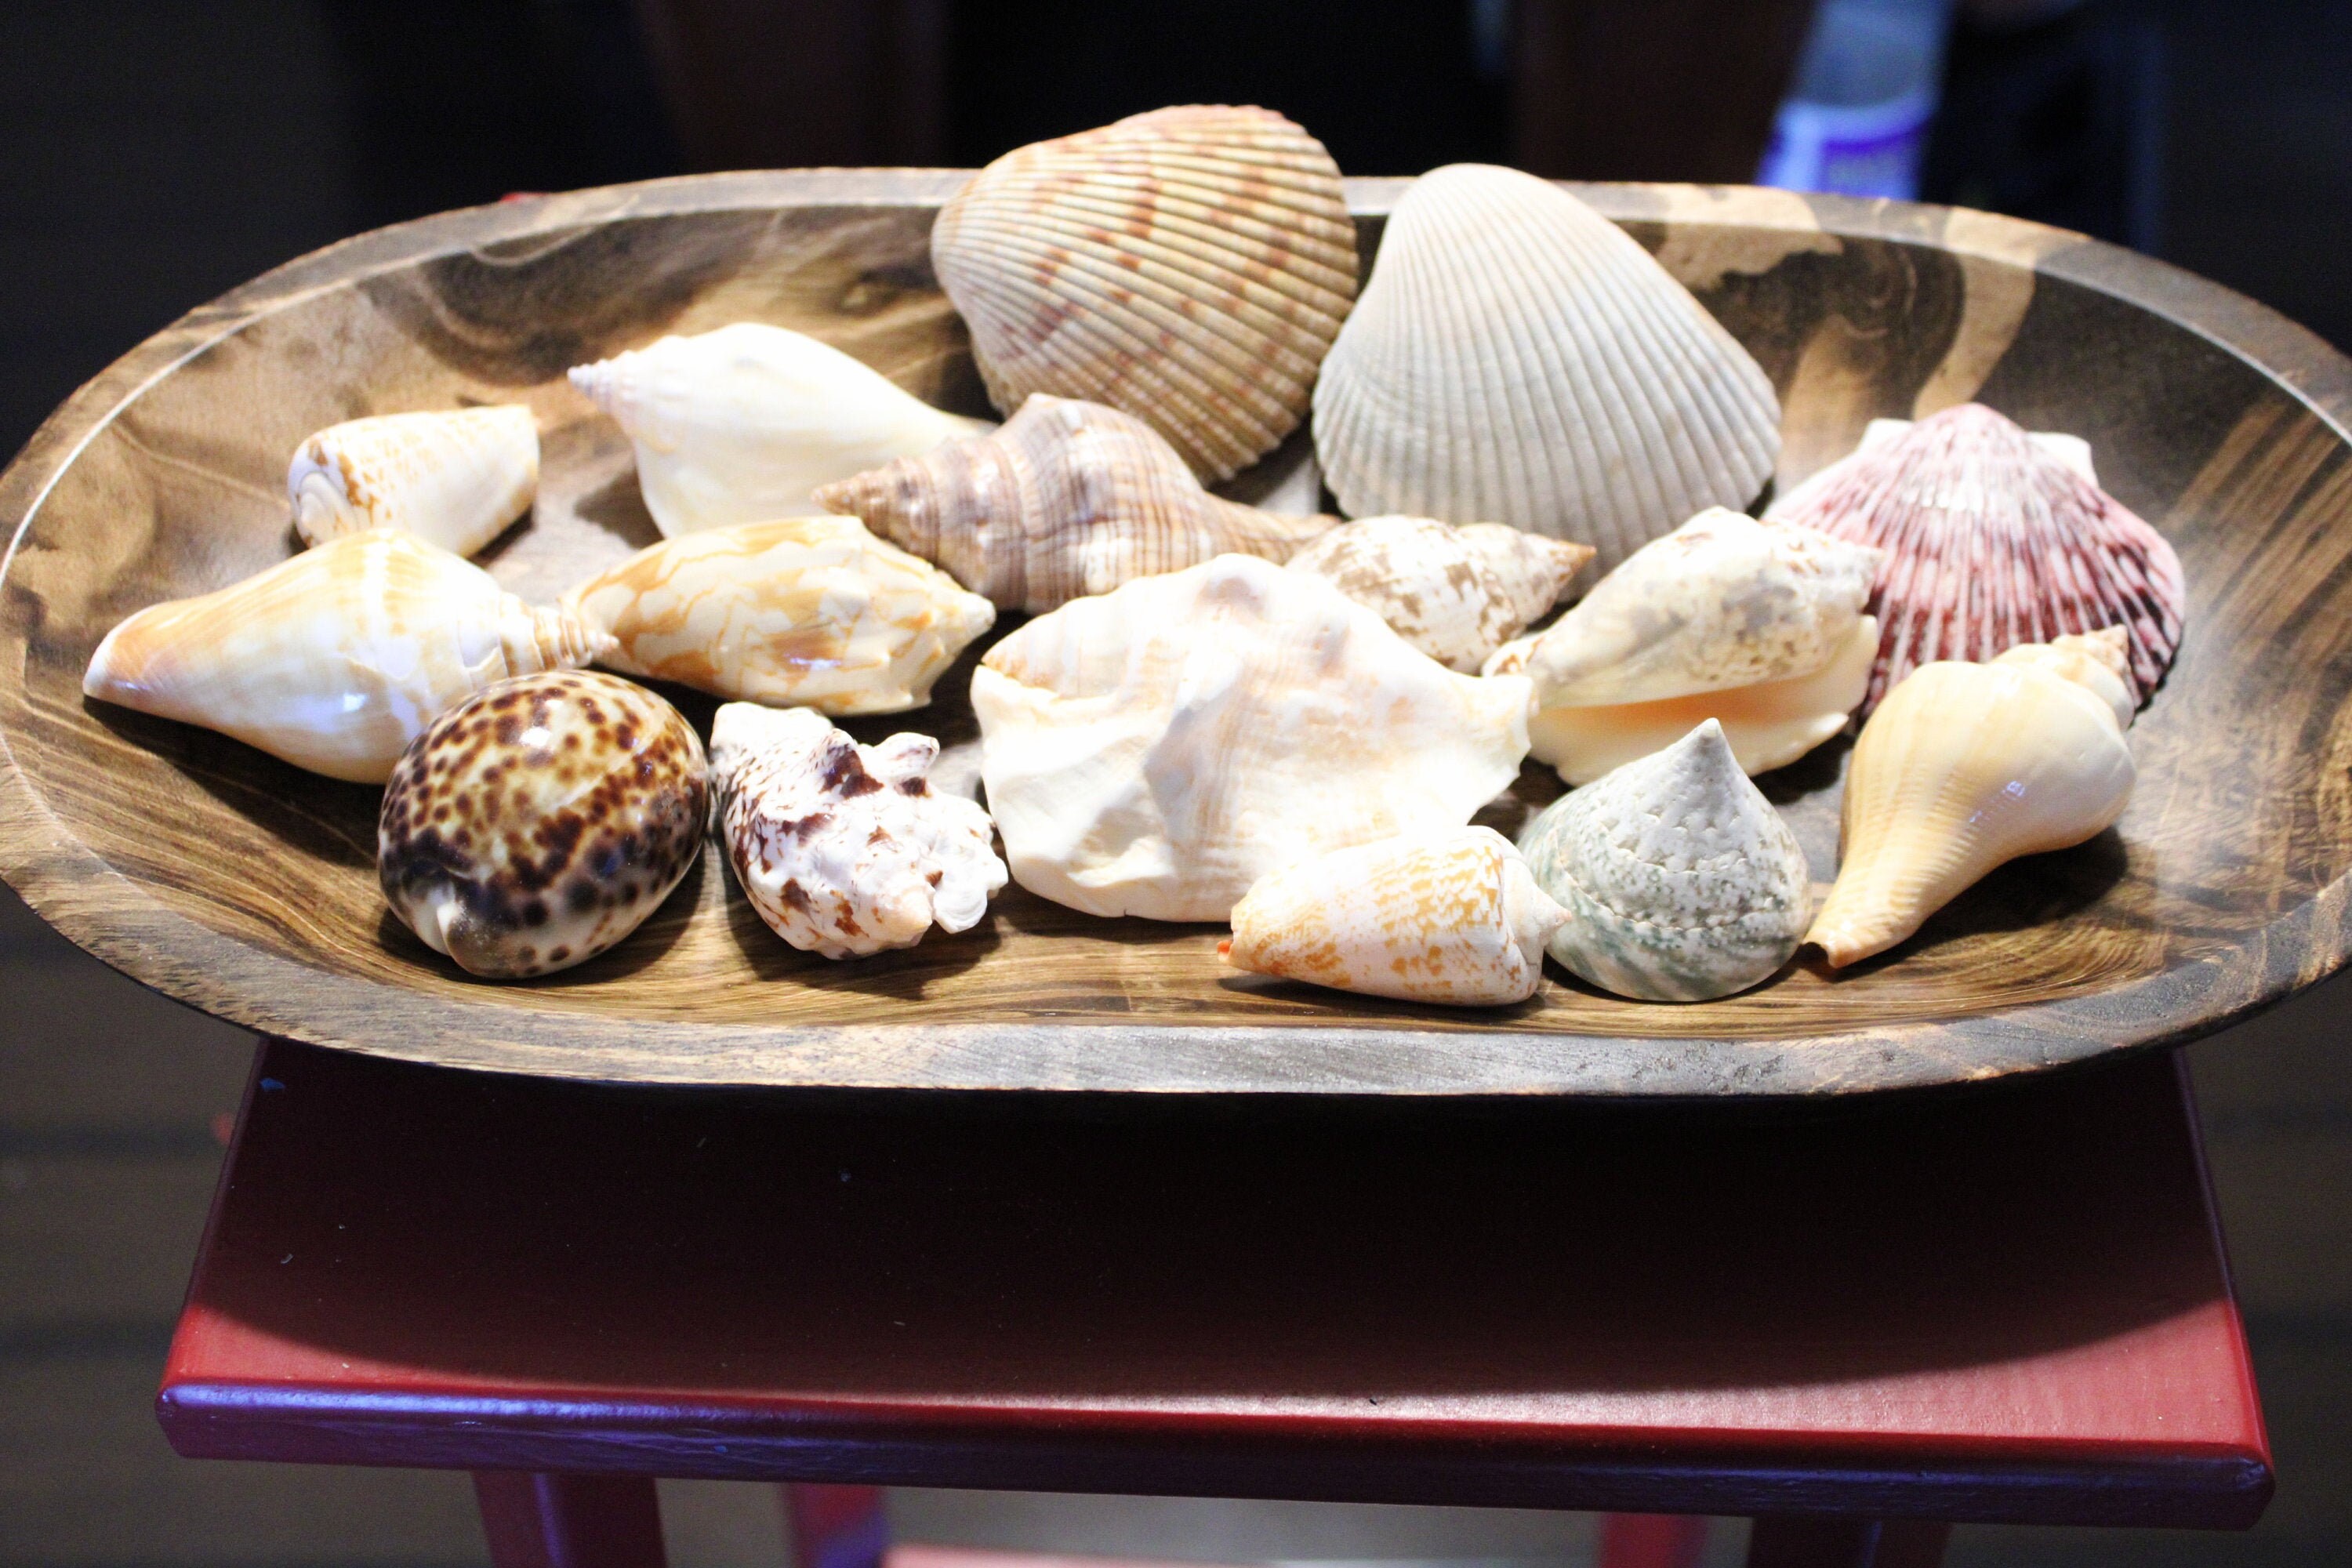 Sea Shells, Sea Shells From Nature, Sea Shells for Decoration, 